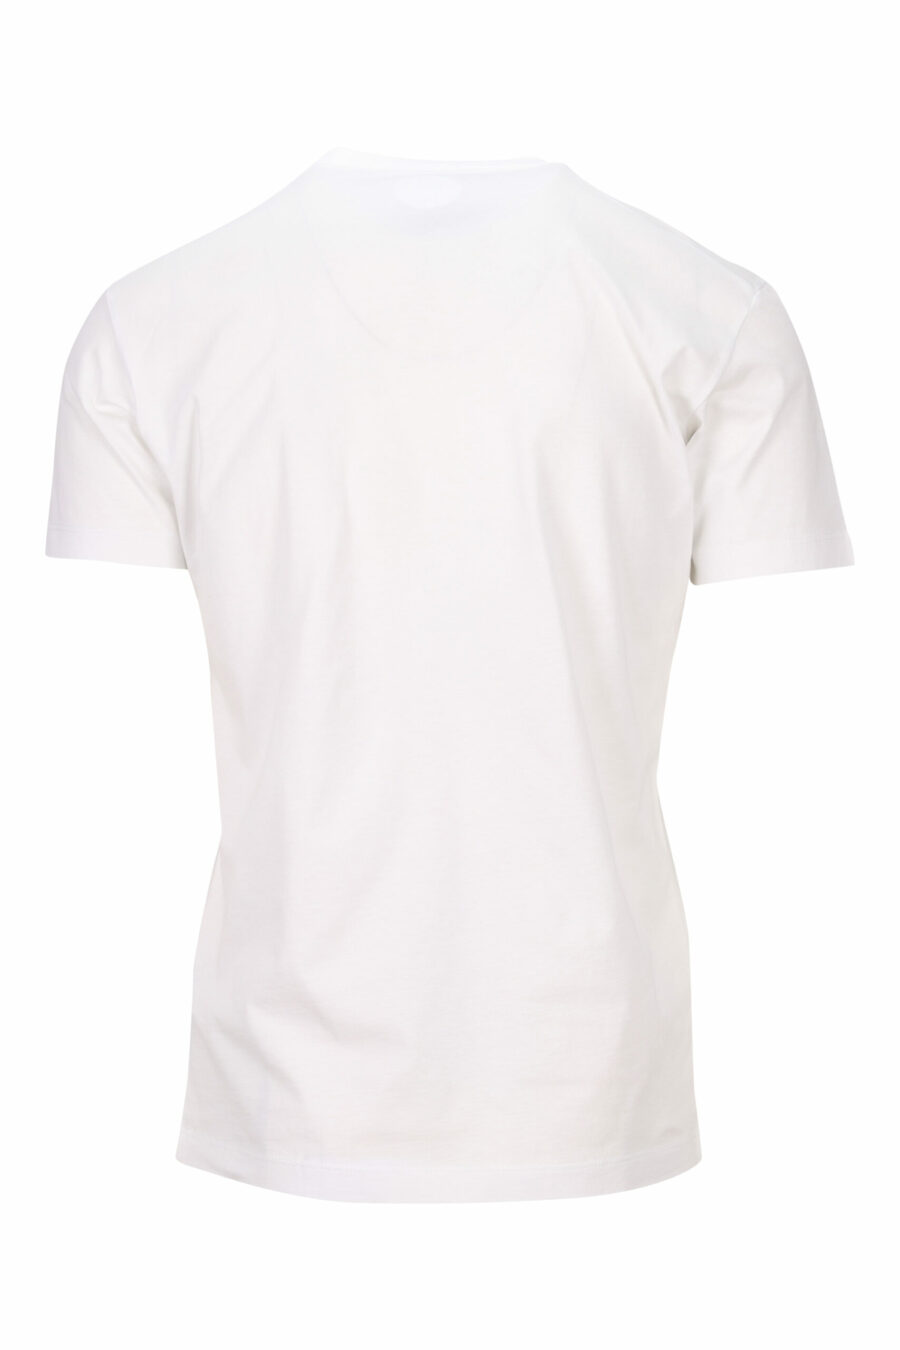 Weißes T-Shirt mit neongrünem unscharfem "Icon" Maxilogo - 8054148358914 1 skaliert